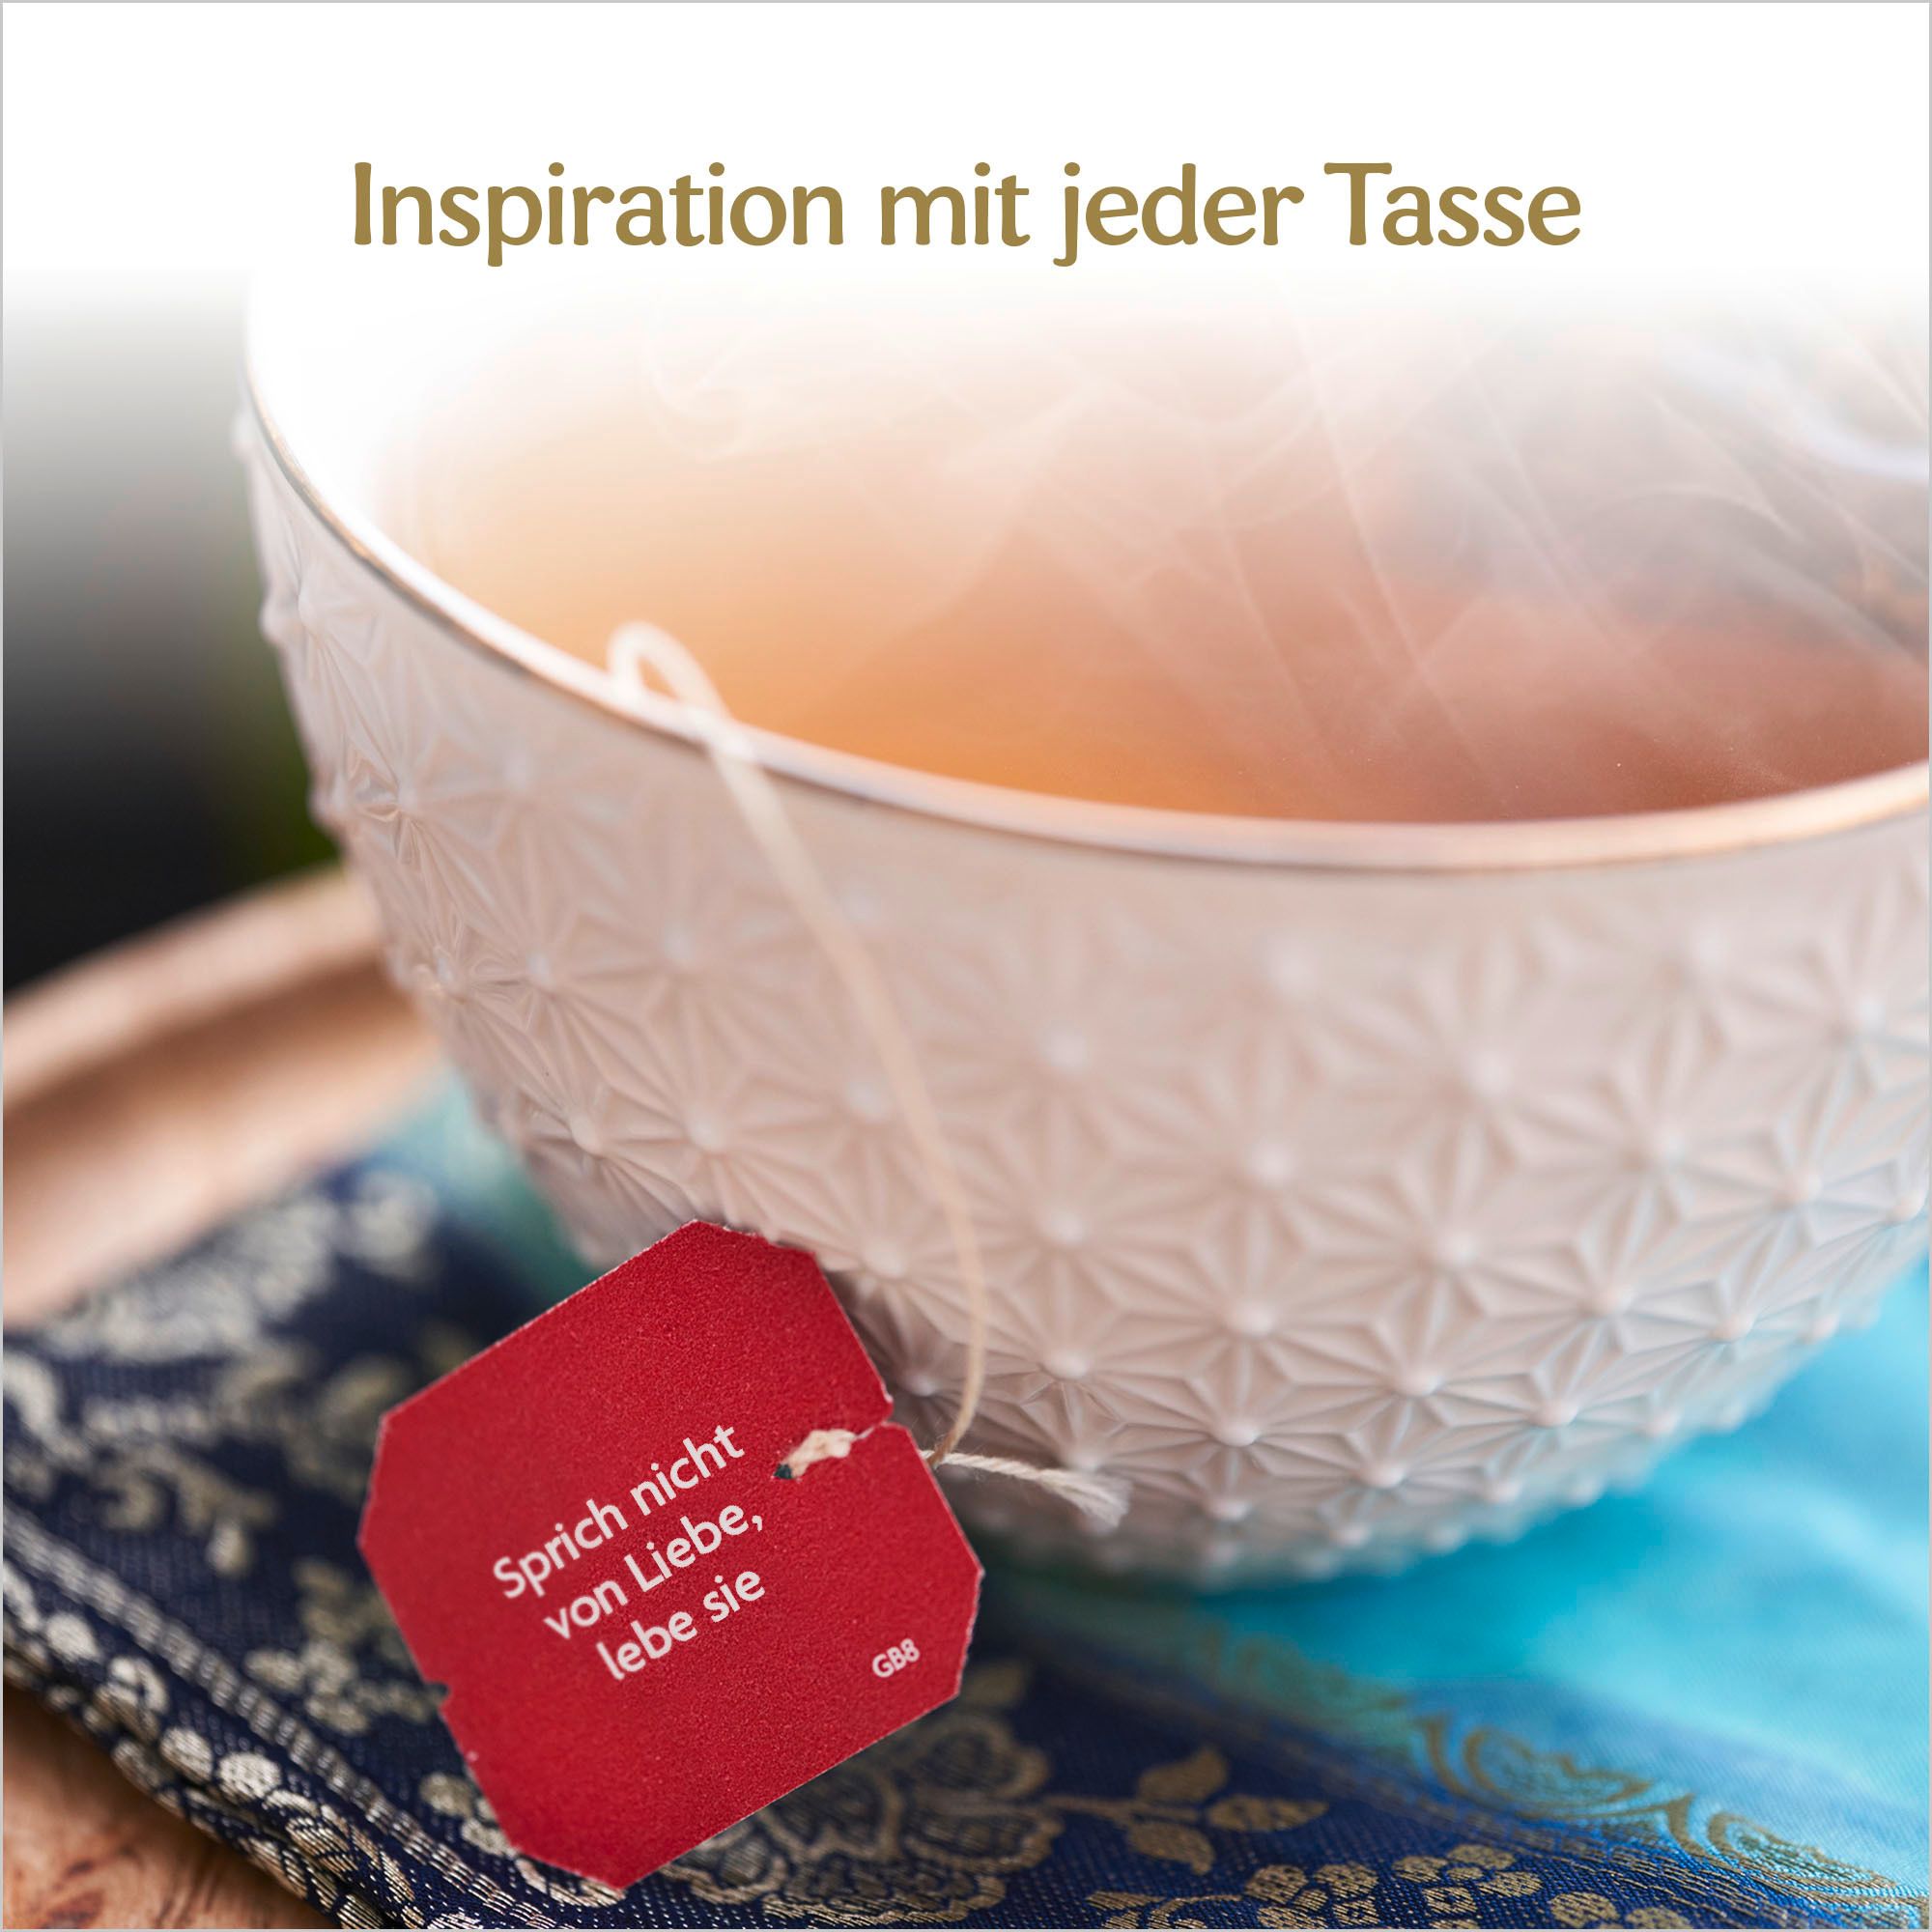 YOGI TEA® Halswärmer, Bio Kräutertee